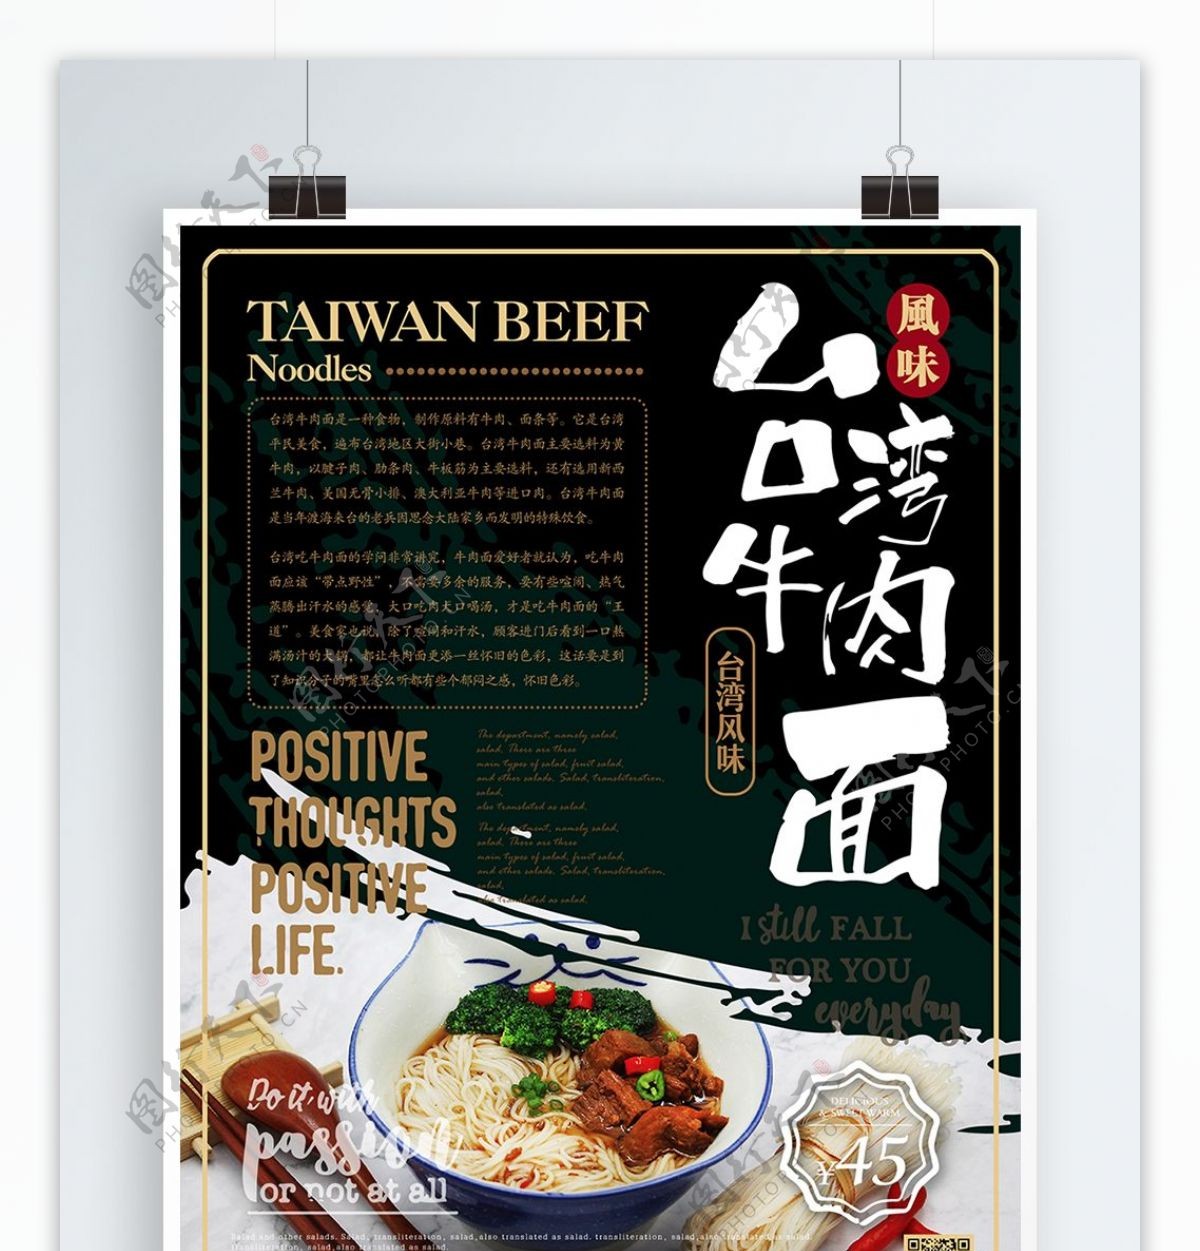 简约大气台湾牛肉面海报